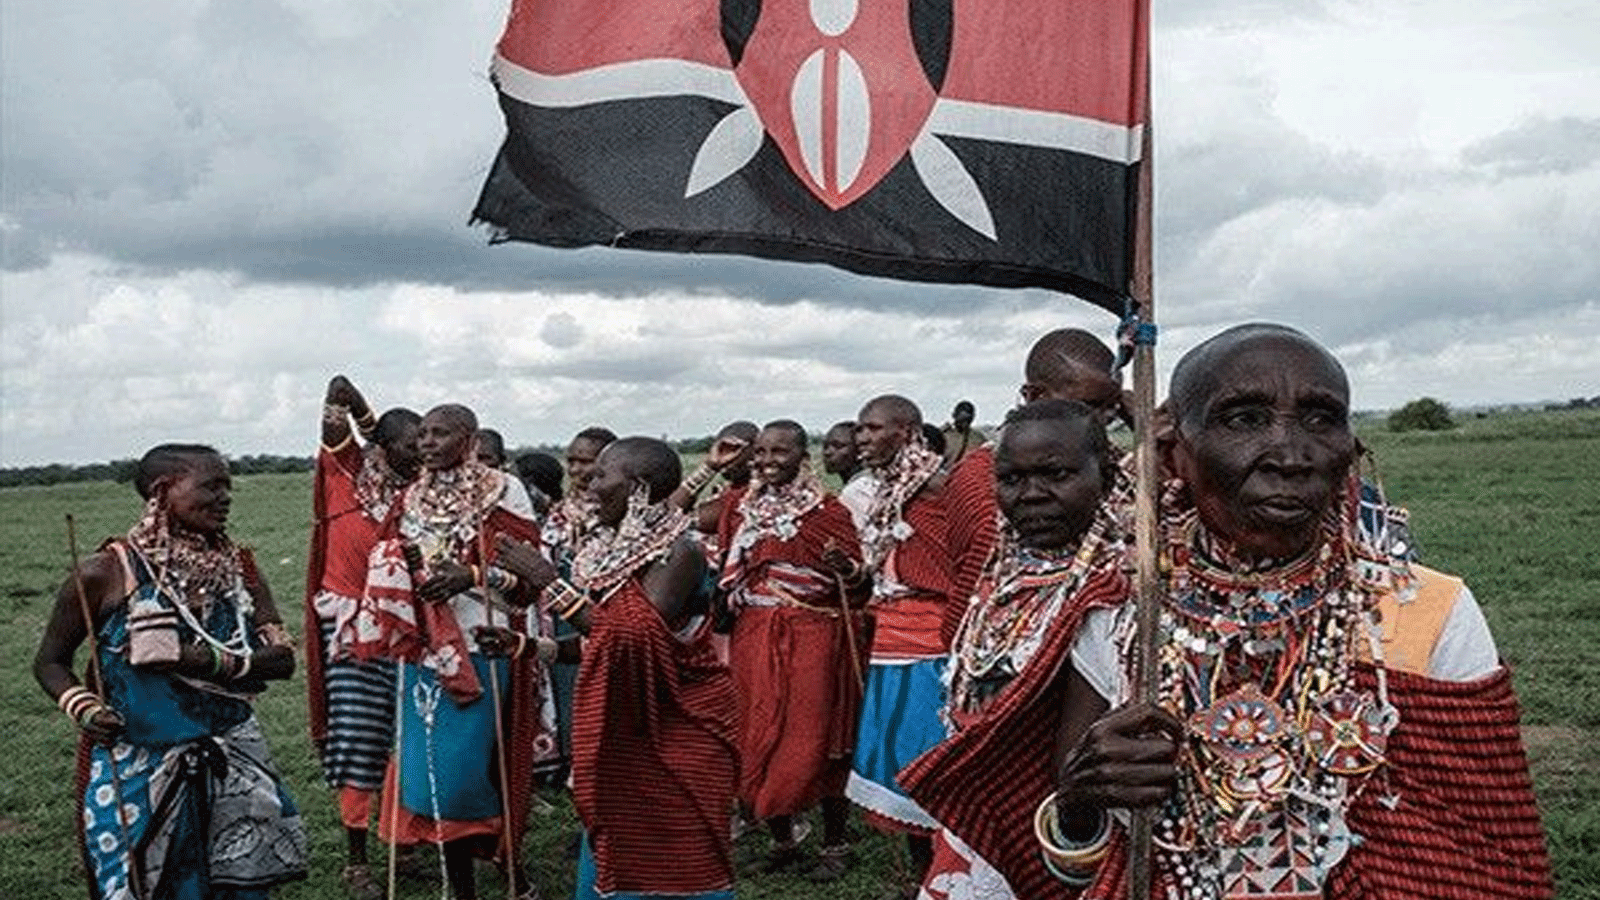 نساء الماساي يشجعن المسابقات خلال حدث رياضي أُطلق عليه اسم أولمبياد الماساي في كيمانا، بالقرب من مدينة كينيا الحدودية مع تنزانيا. في 15 كانون الأول\ ديسمبر 2018